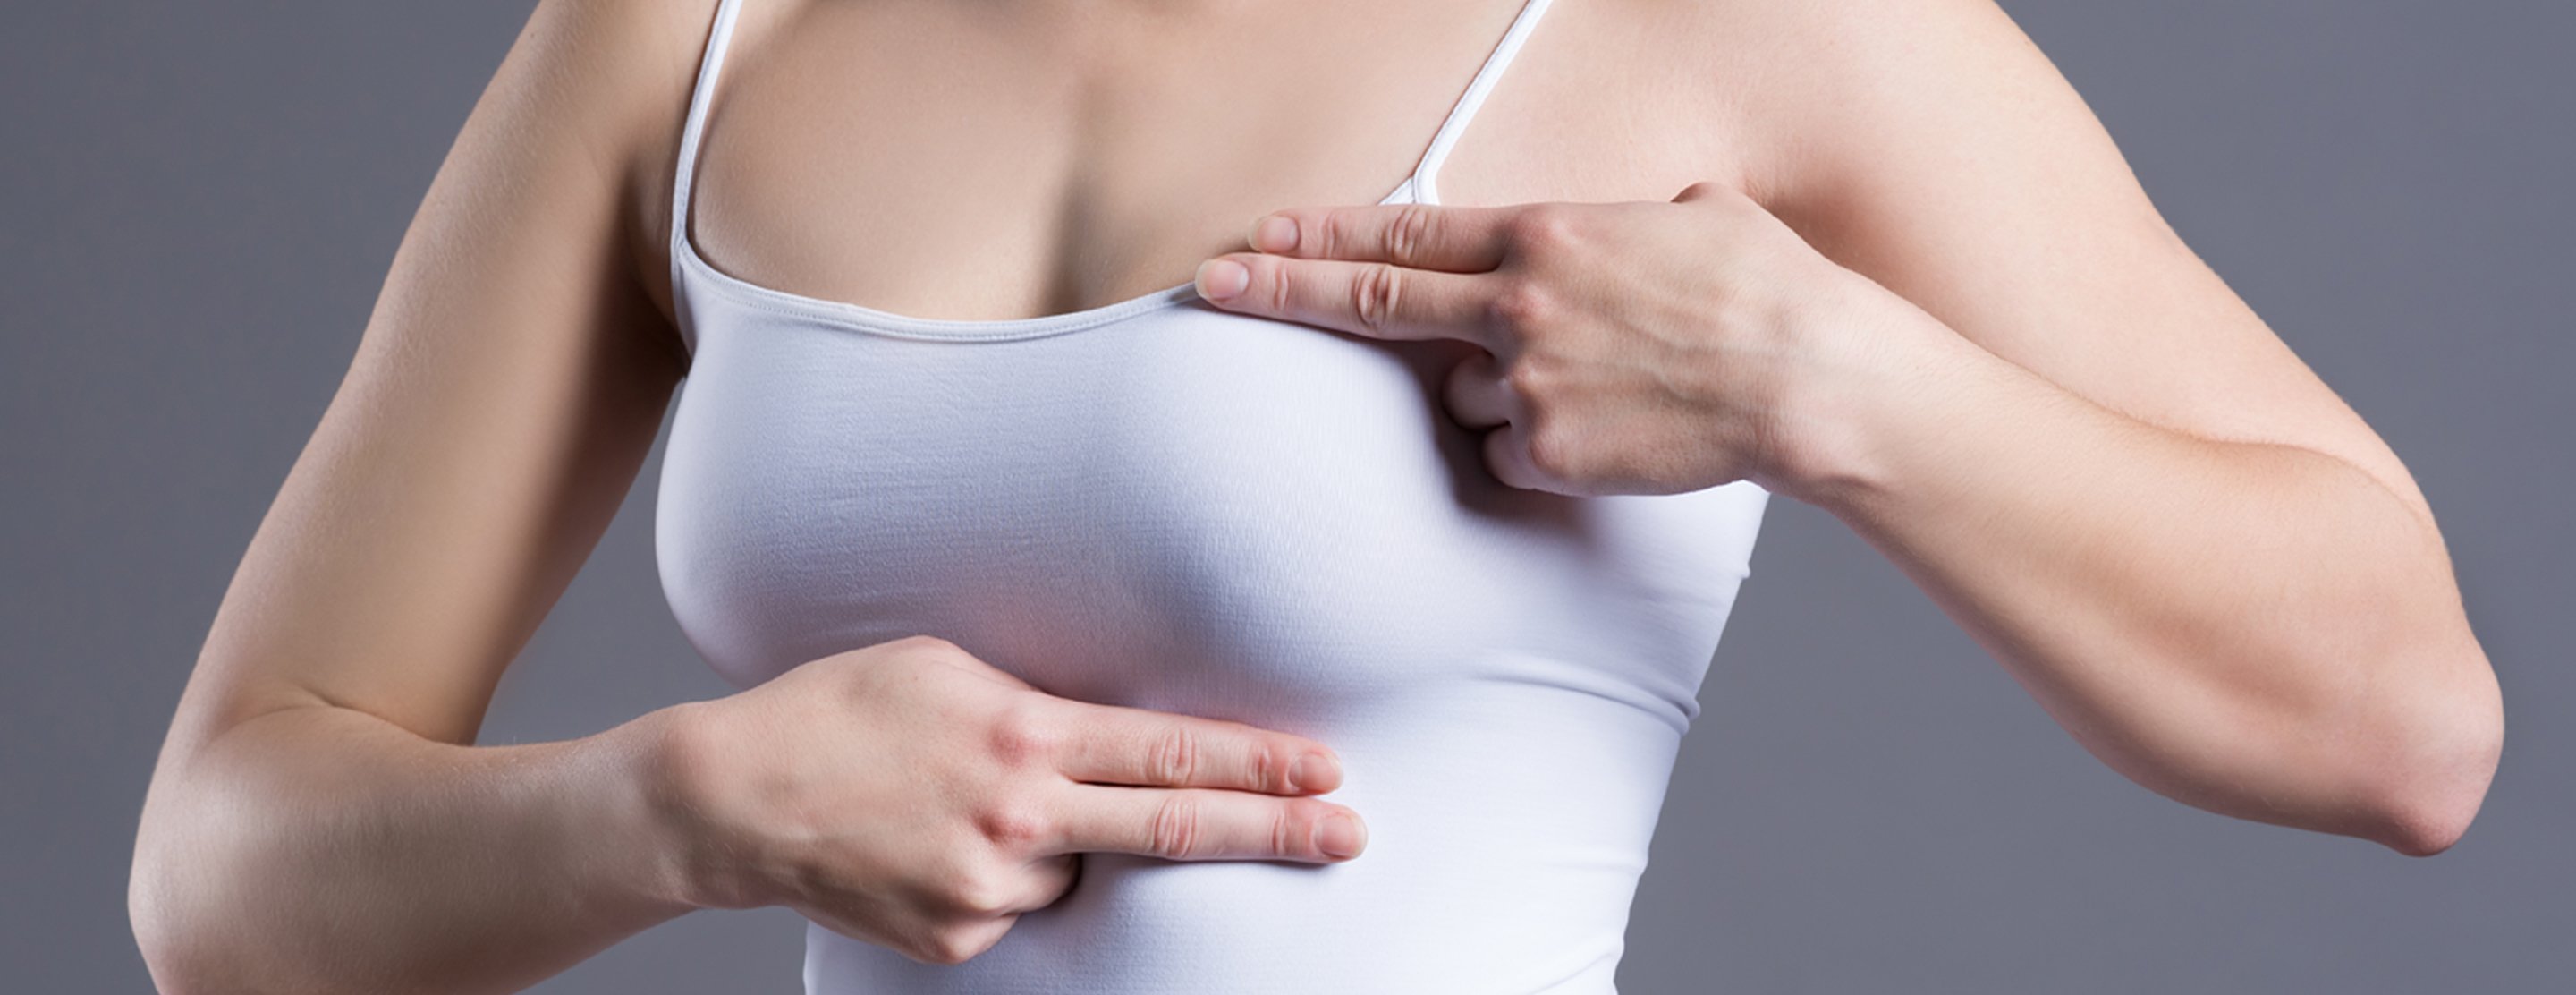 какие болезни у женщин на груди фото 118